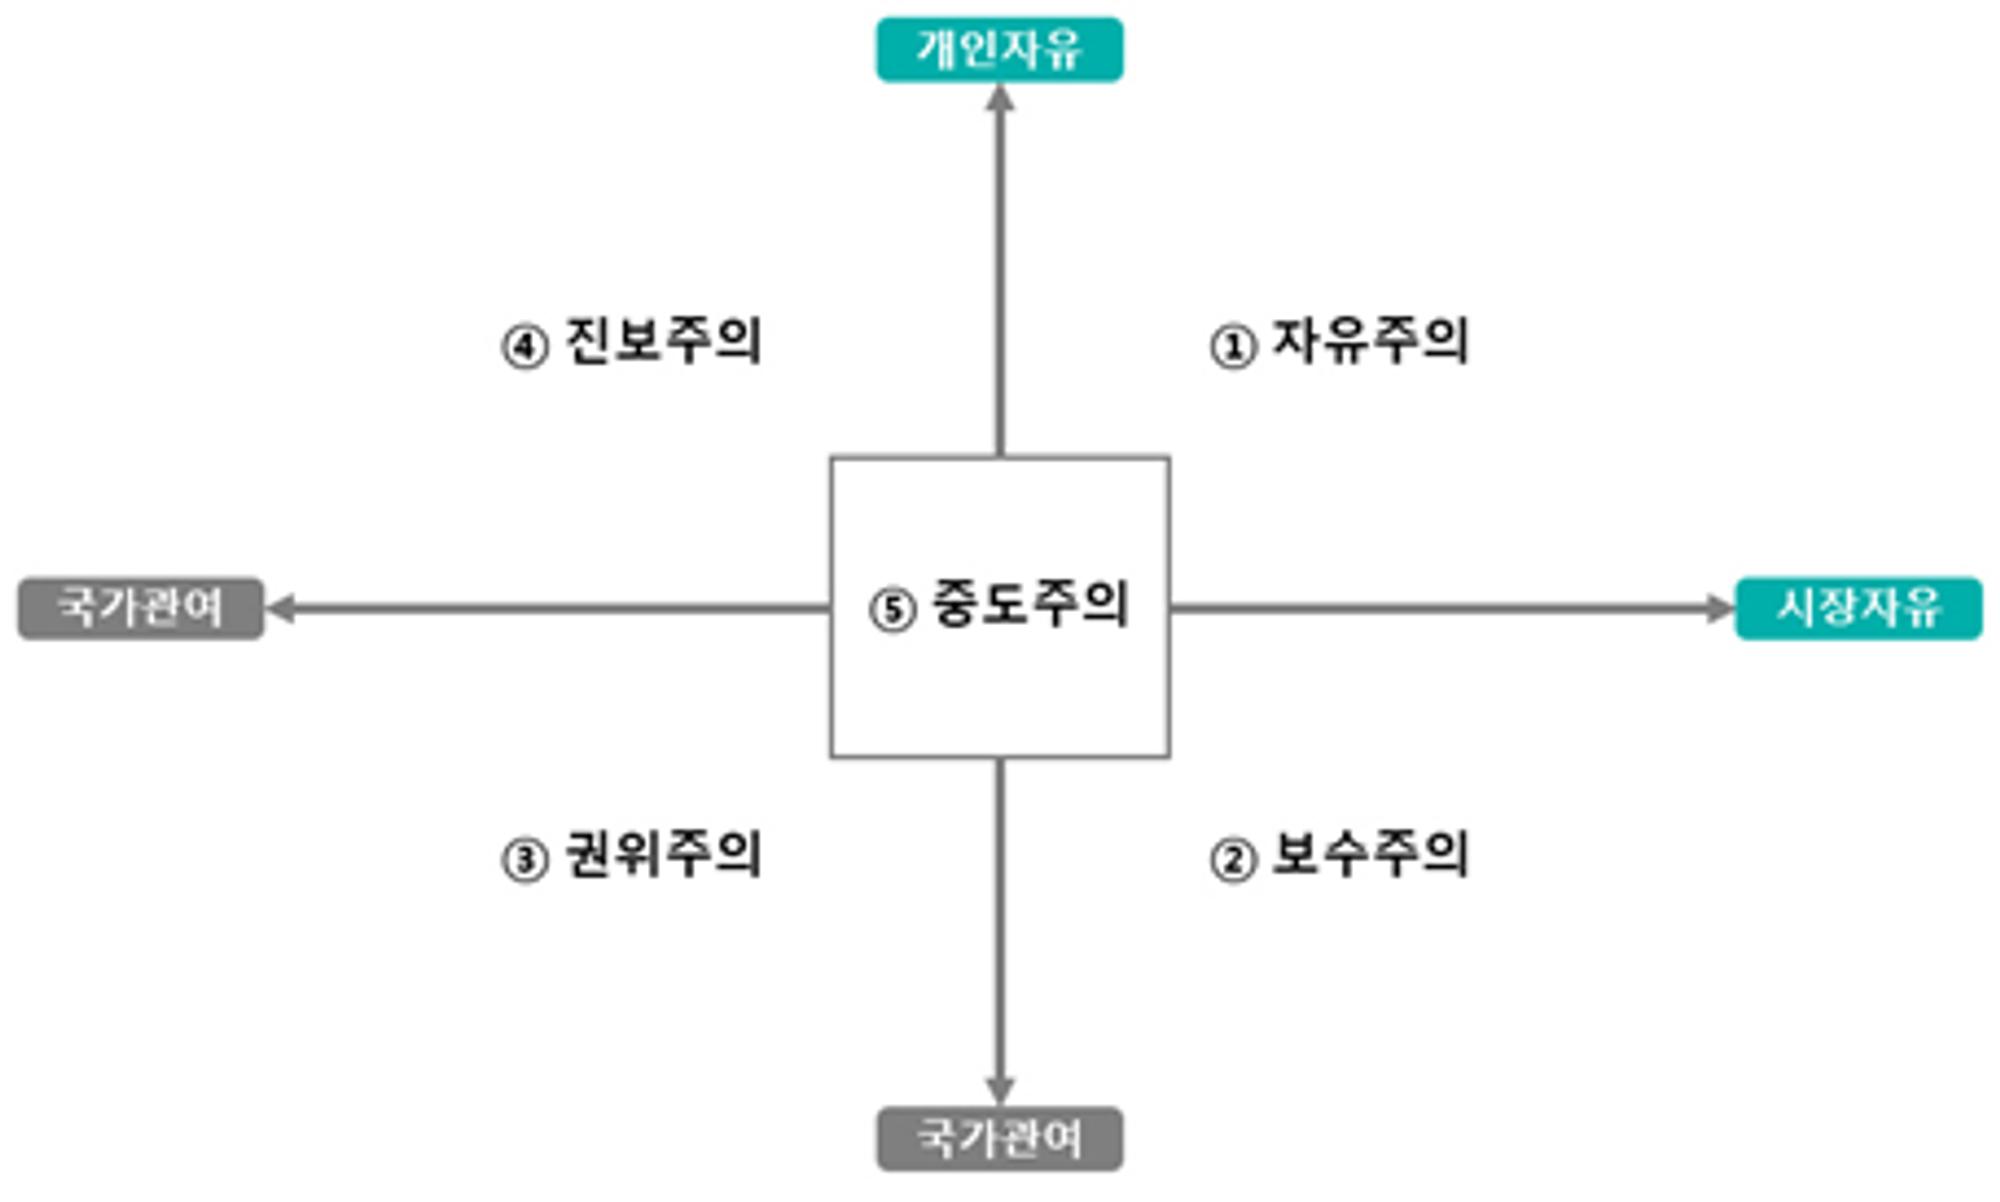 한국인 정치성향 조사결과 분석 : 한국 국민, 자신의 정치 성향에 대해 혼란을 가지고, 정당 선택도 무작위처럼 나타나